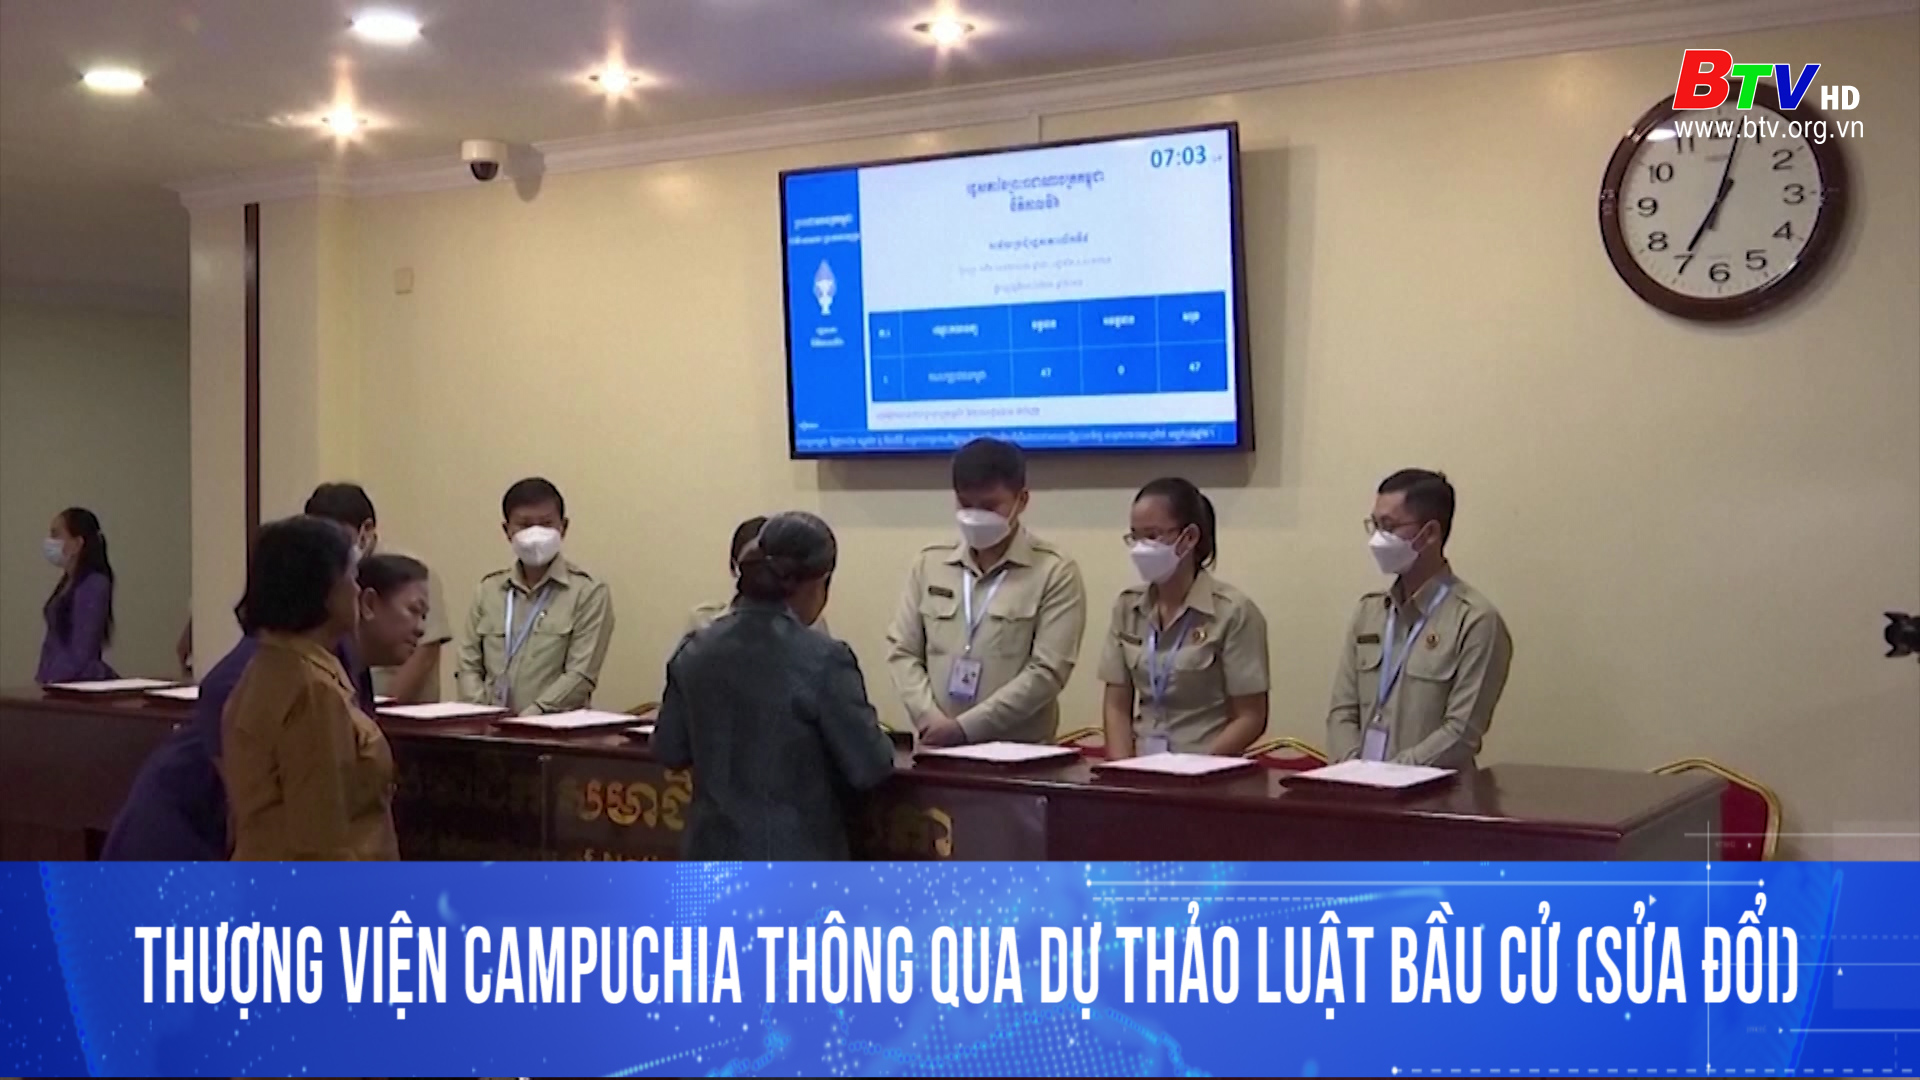 Thượng viện Campuchia thông qua dự thảo luật bầu ( sửa đổi)